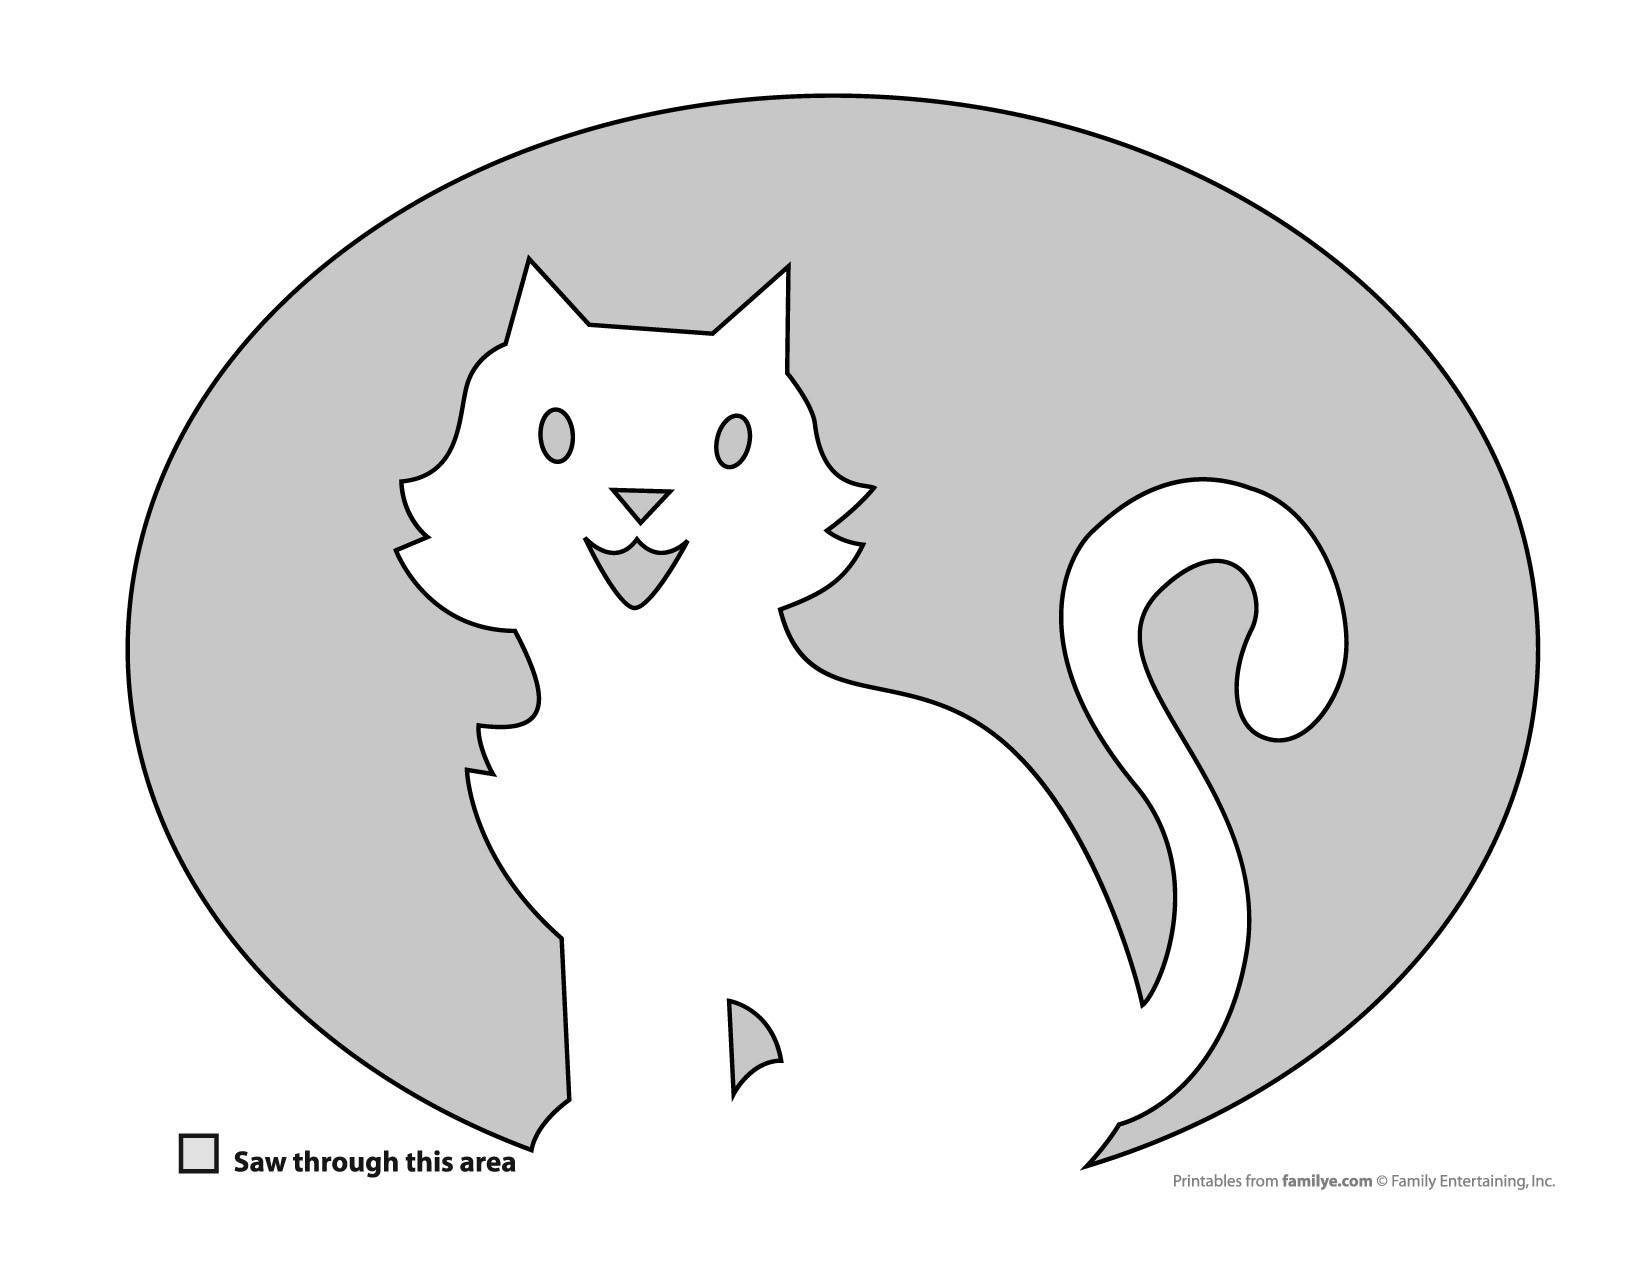 Как сделать кошку из бумаги — схема и шаблоны для изготовления